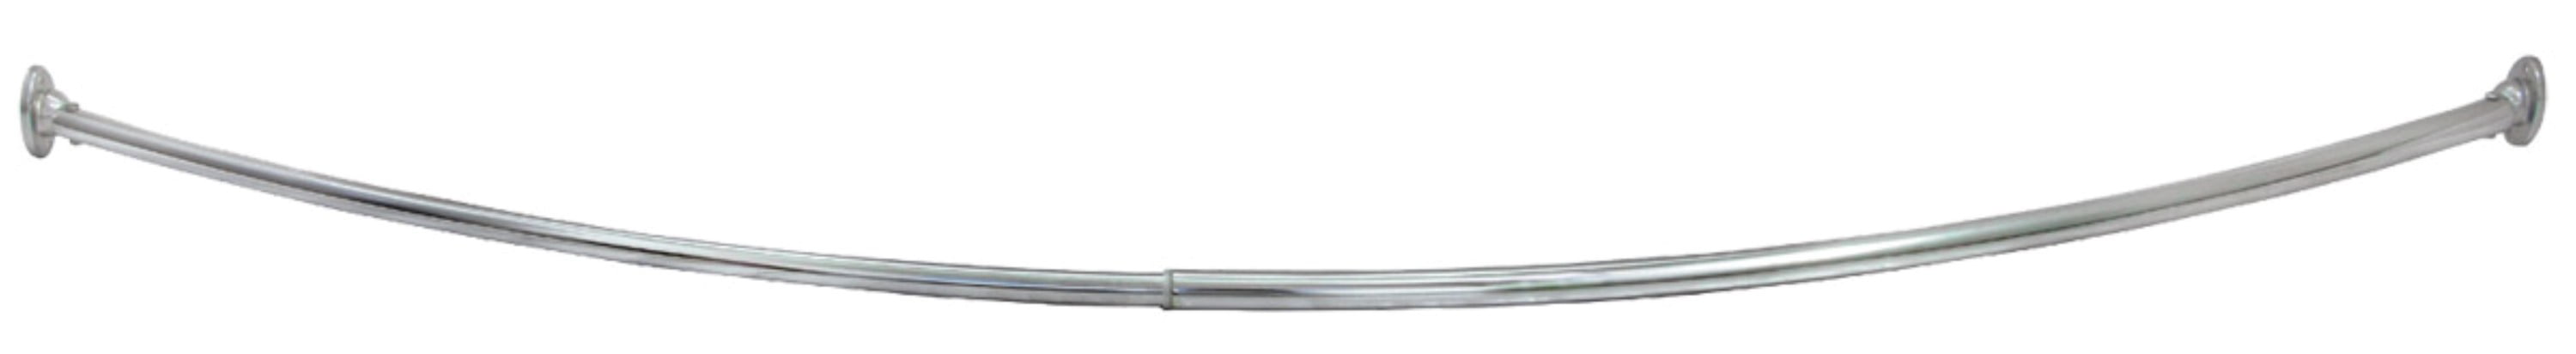 Curved Shower Rod, Polished Chrome